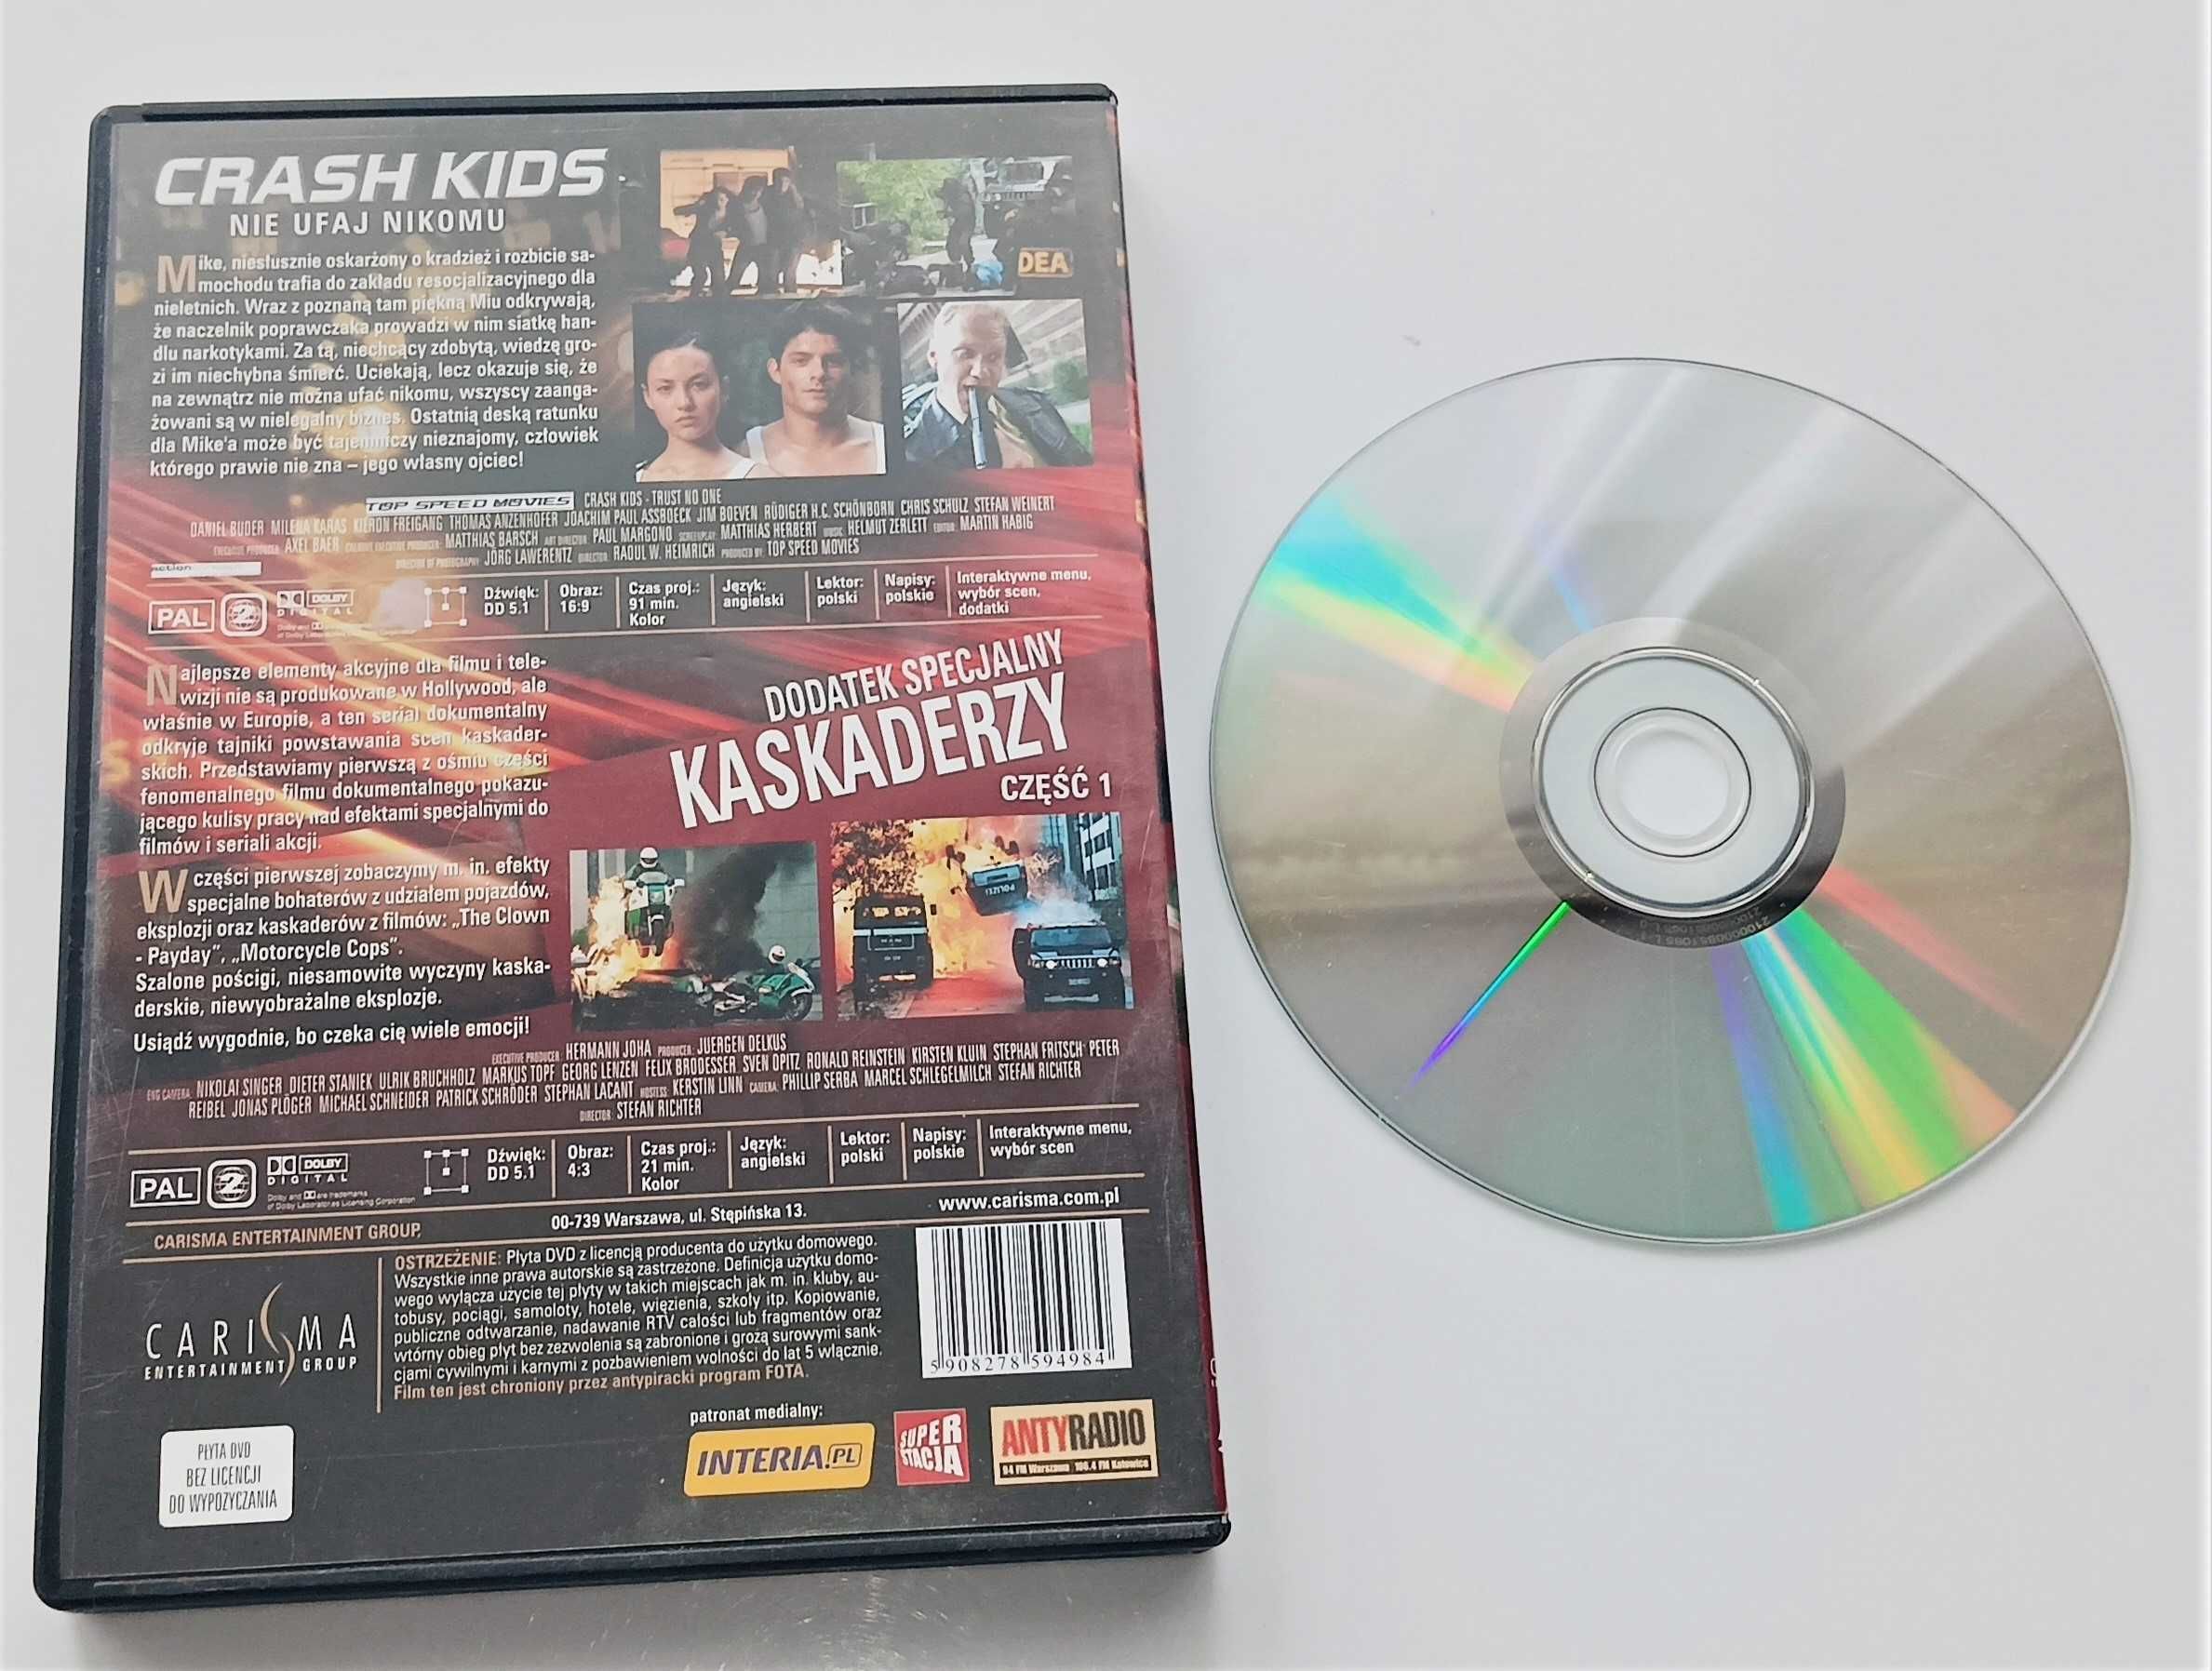 Crash Kids nie ufaj nikomu + kaskaderzy film płyta DVD